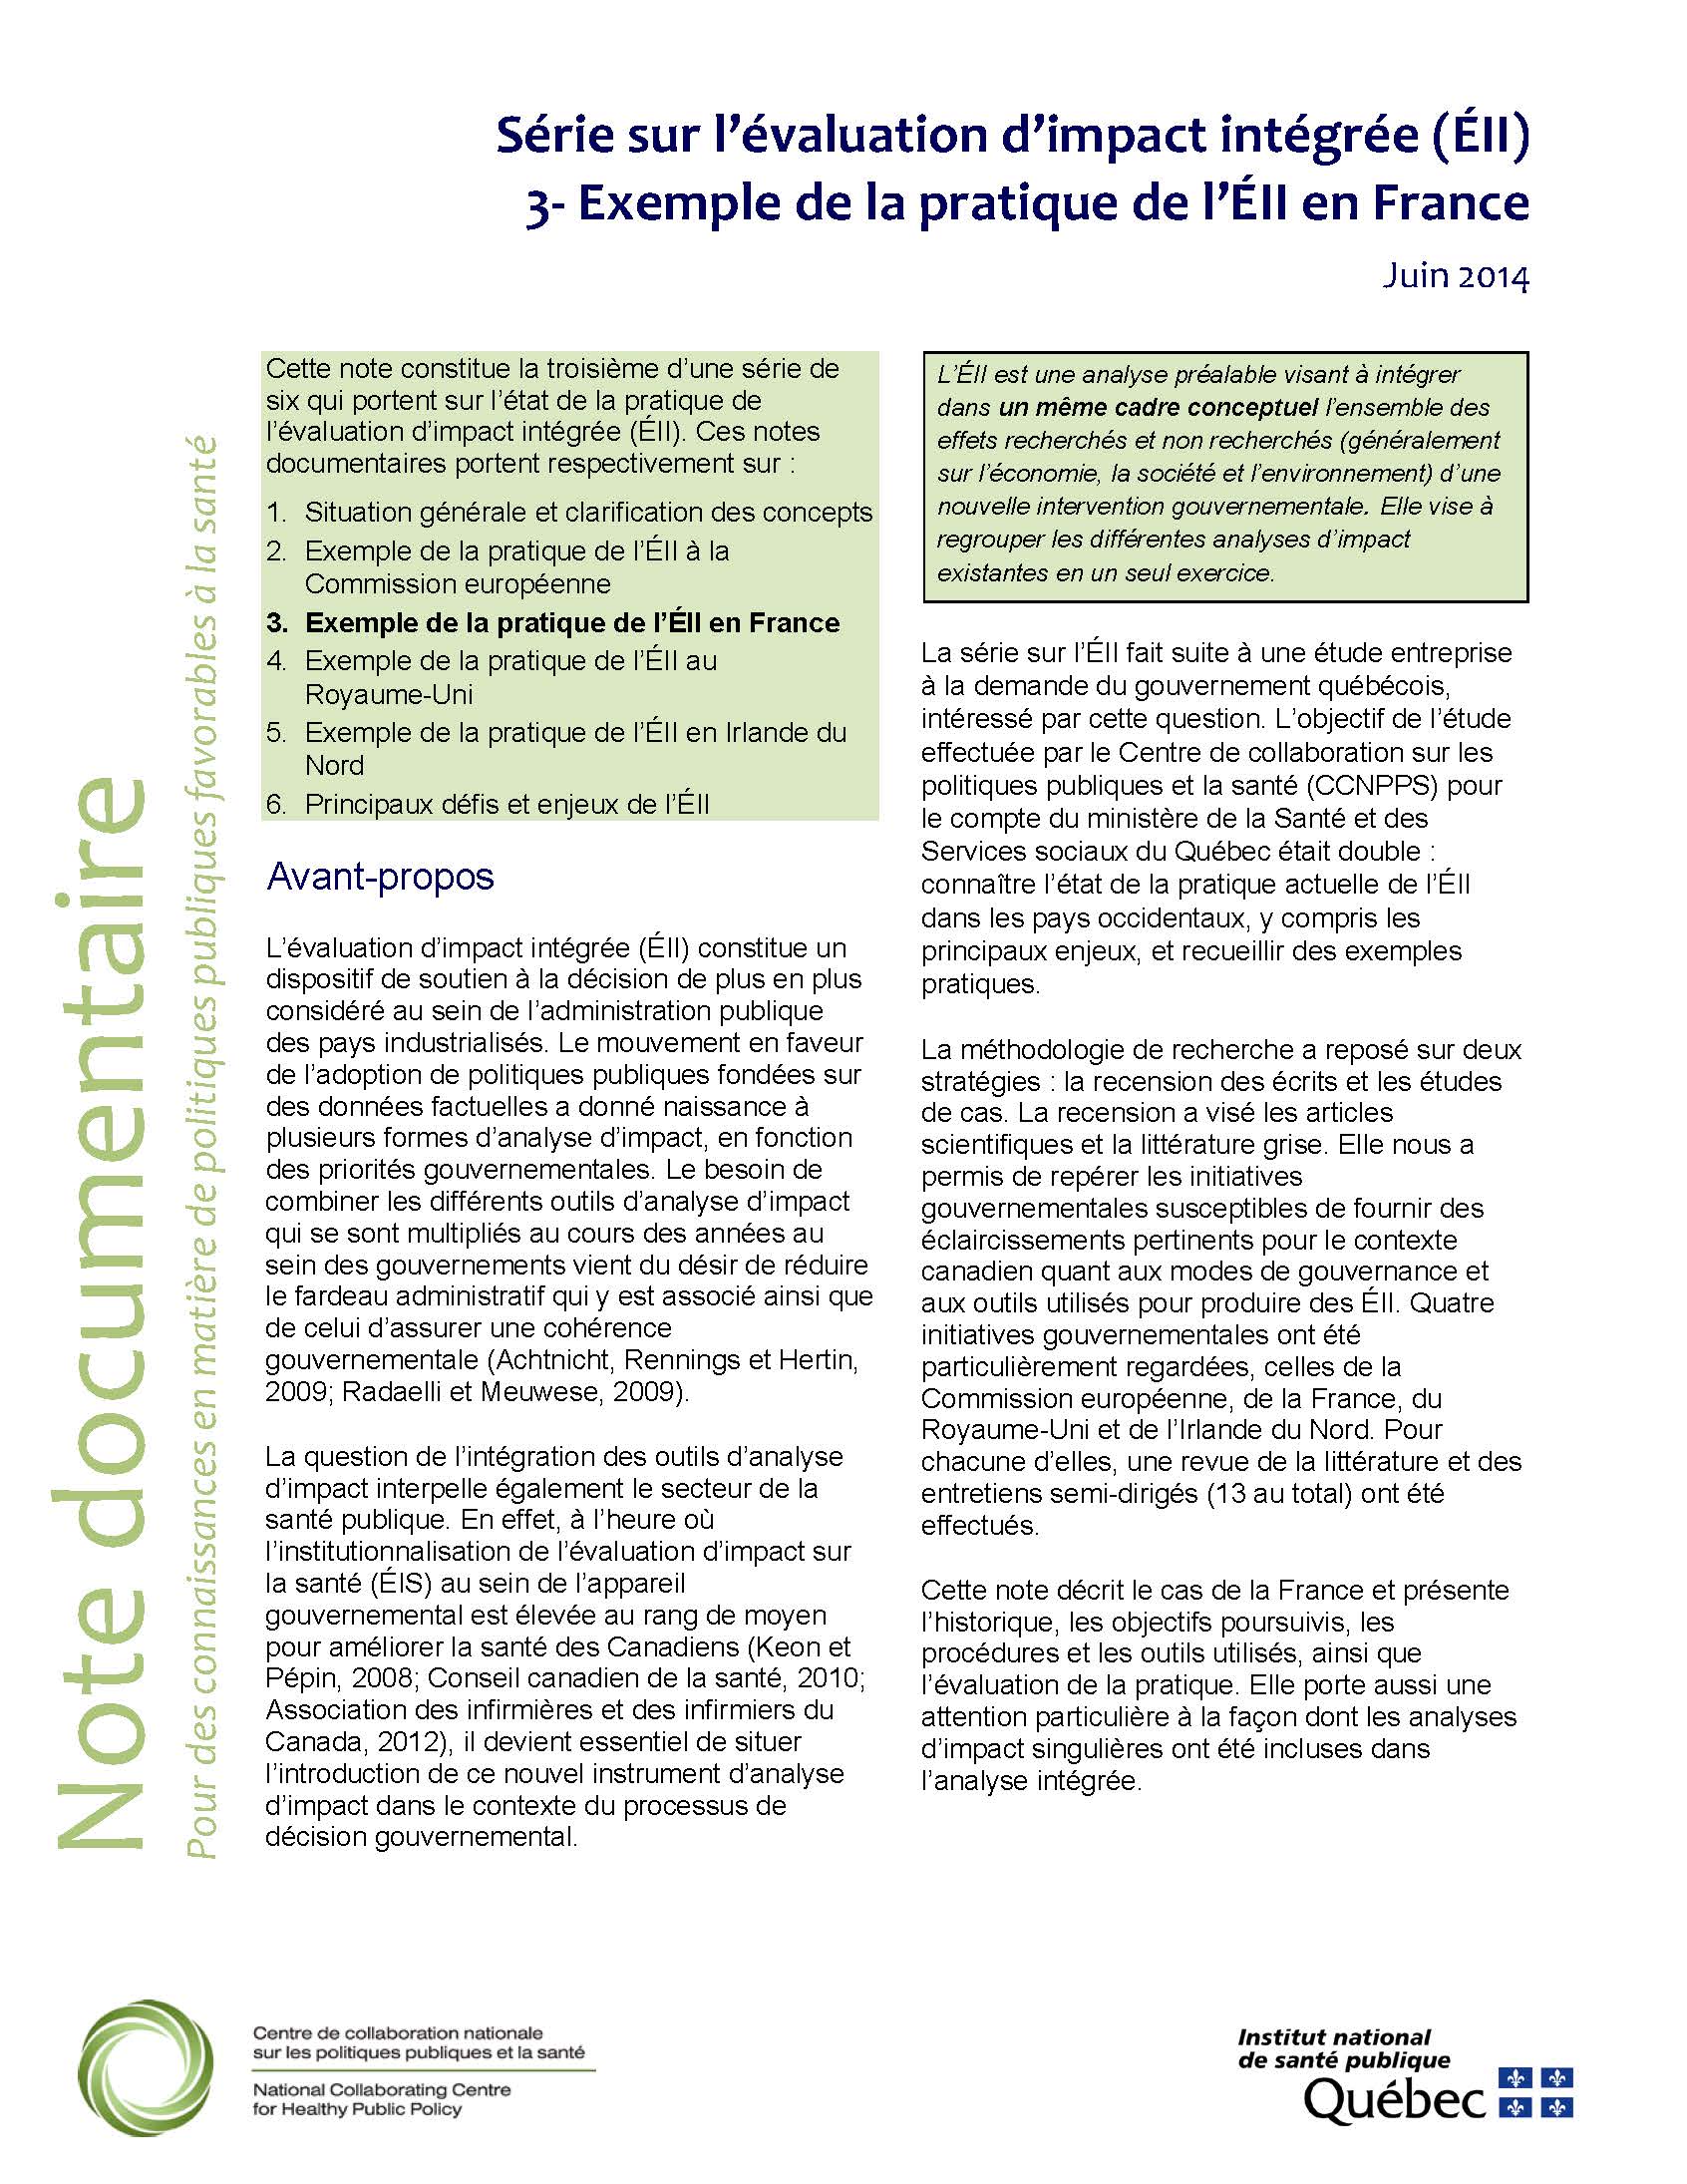 Série sur l’évaluation d’impact intégrée (ÉII). 3-Exemple de la pratique de l’ÉII en France